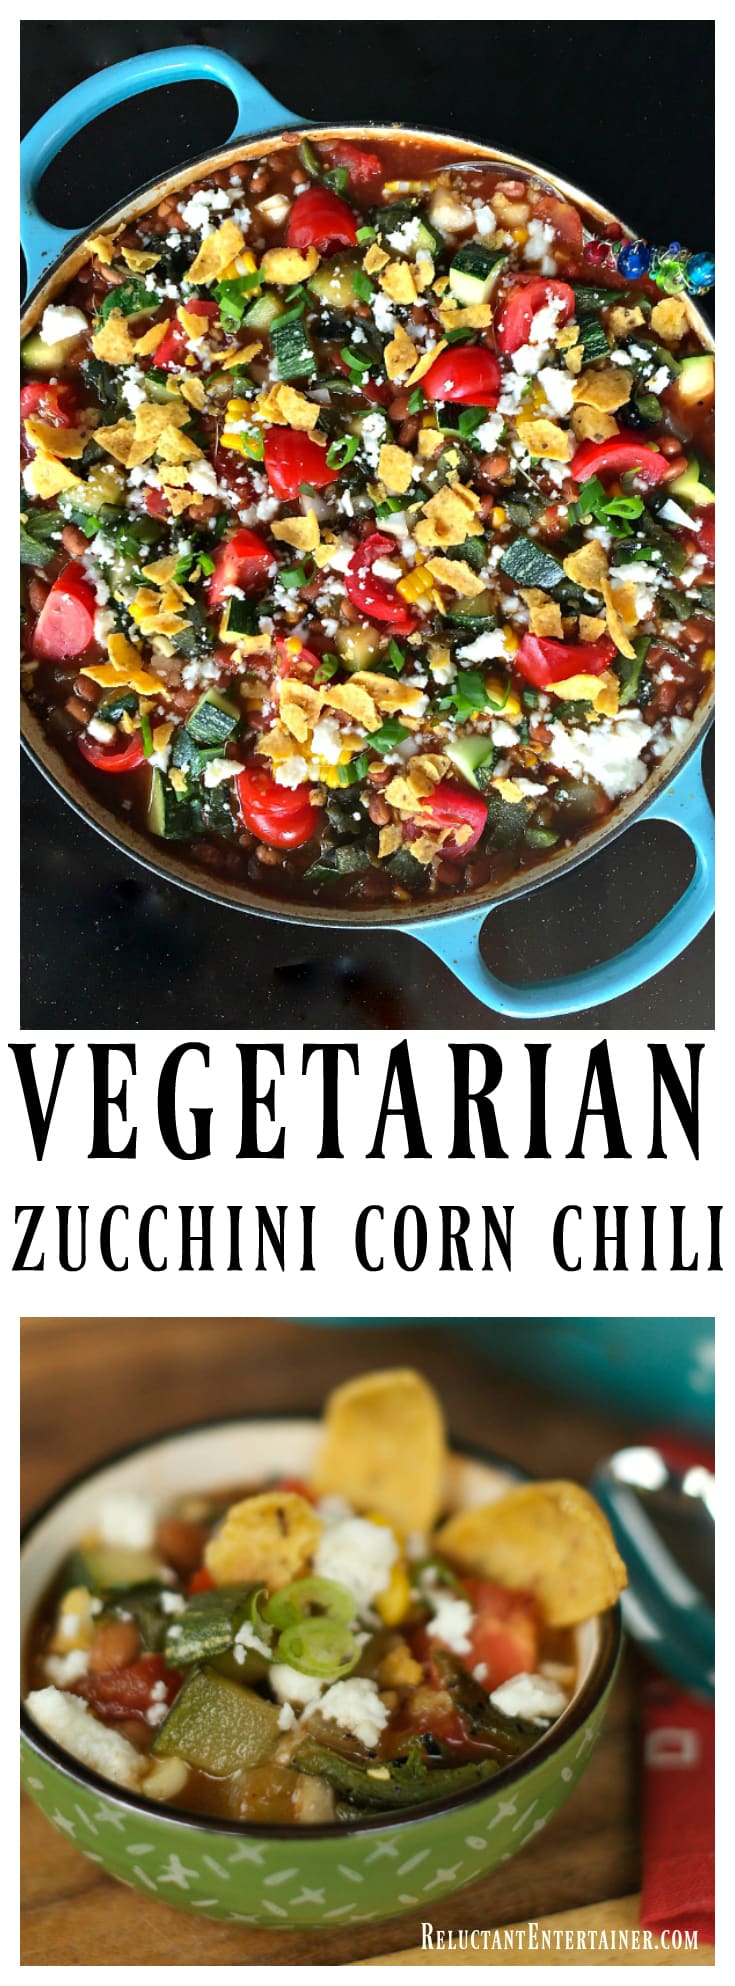 Vegetarian Zucchini Corn Chili